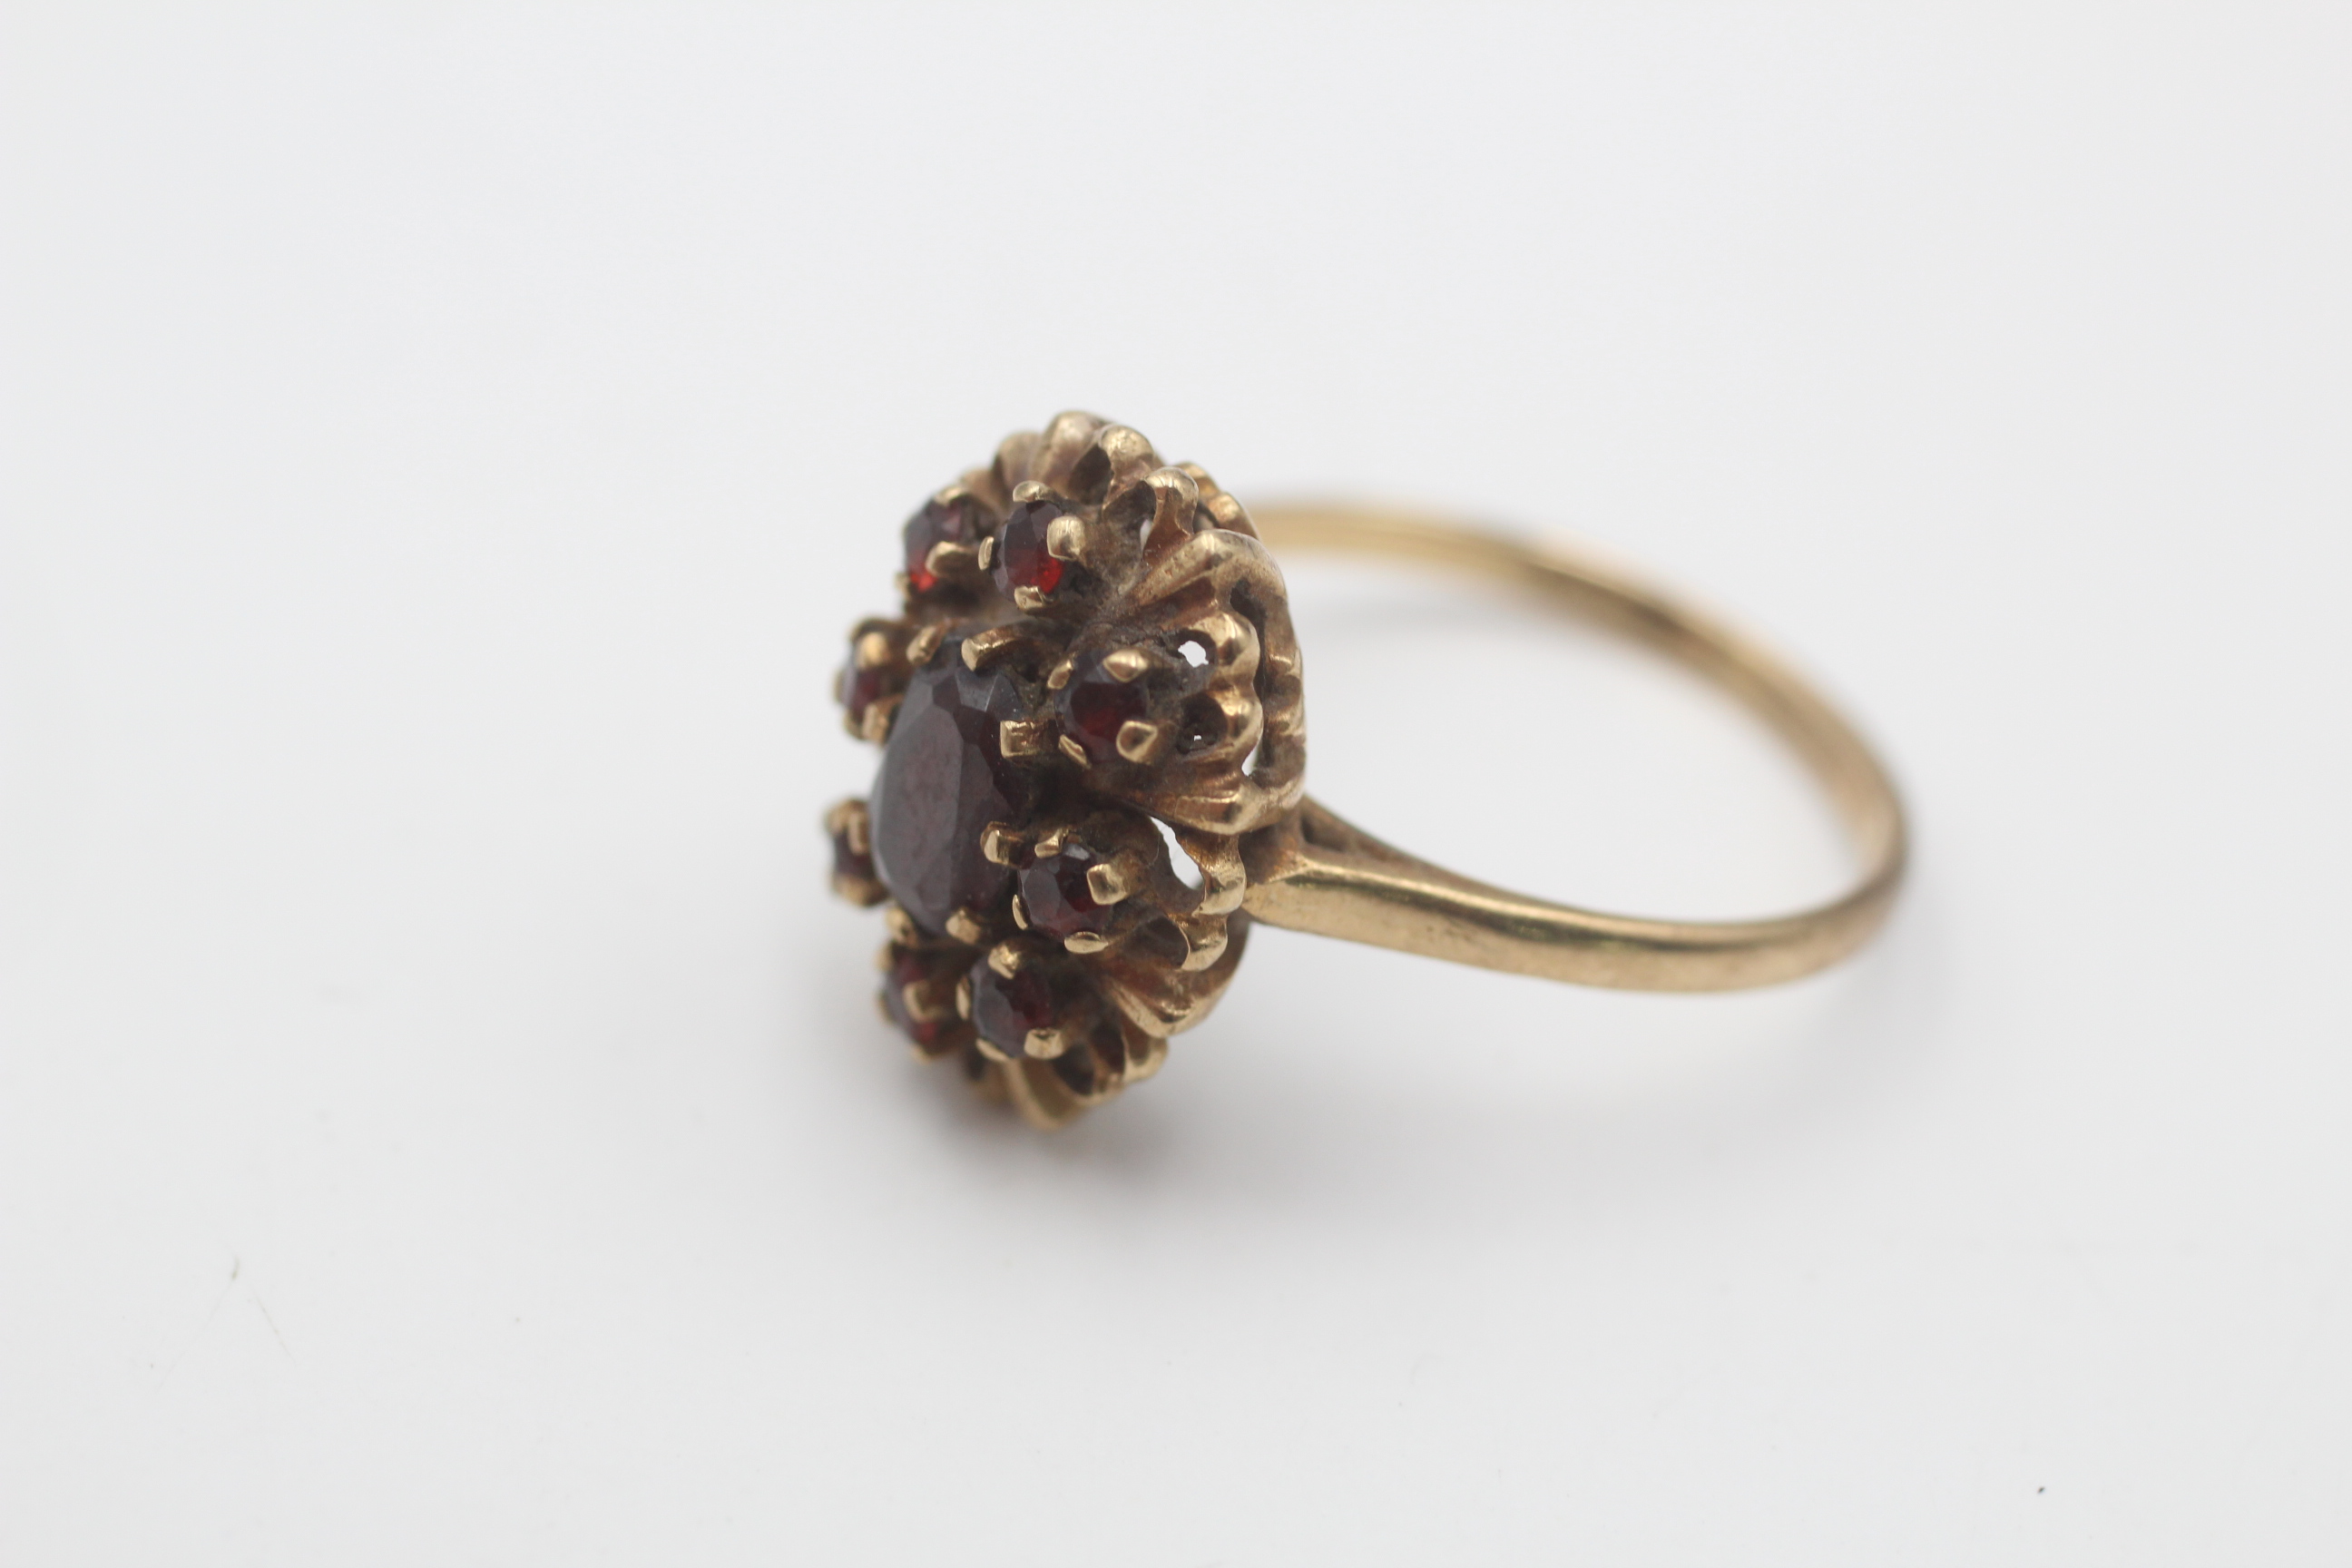 9ct gold vintage garnet halo dress ring (3.7g) - Image 2 of 6